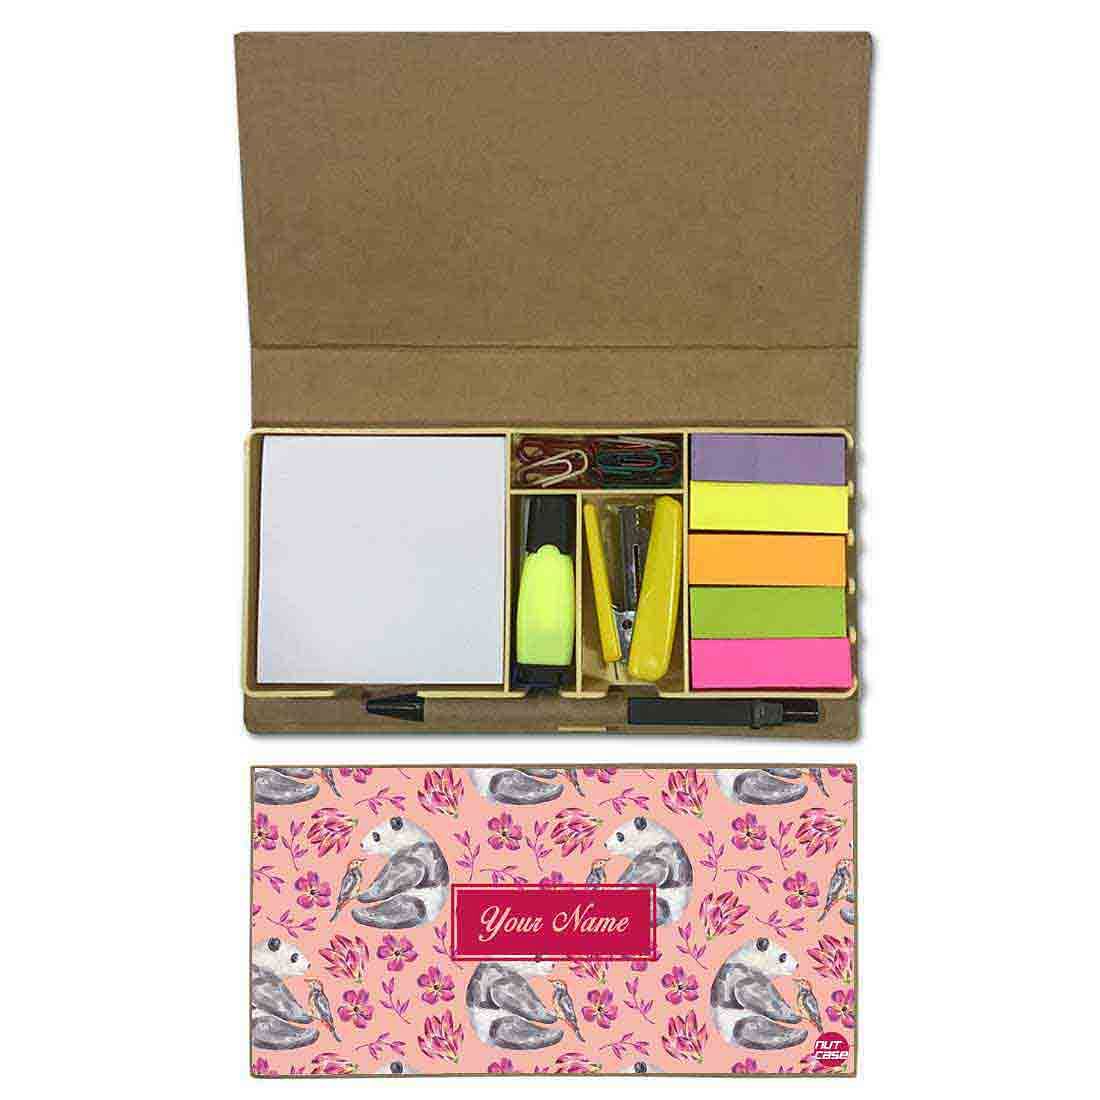 Customized Stationery Gift Set Box Organizer - Panda Nutcase